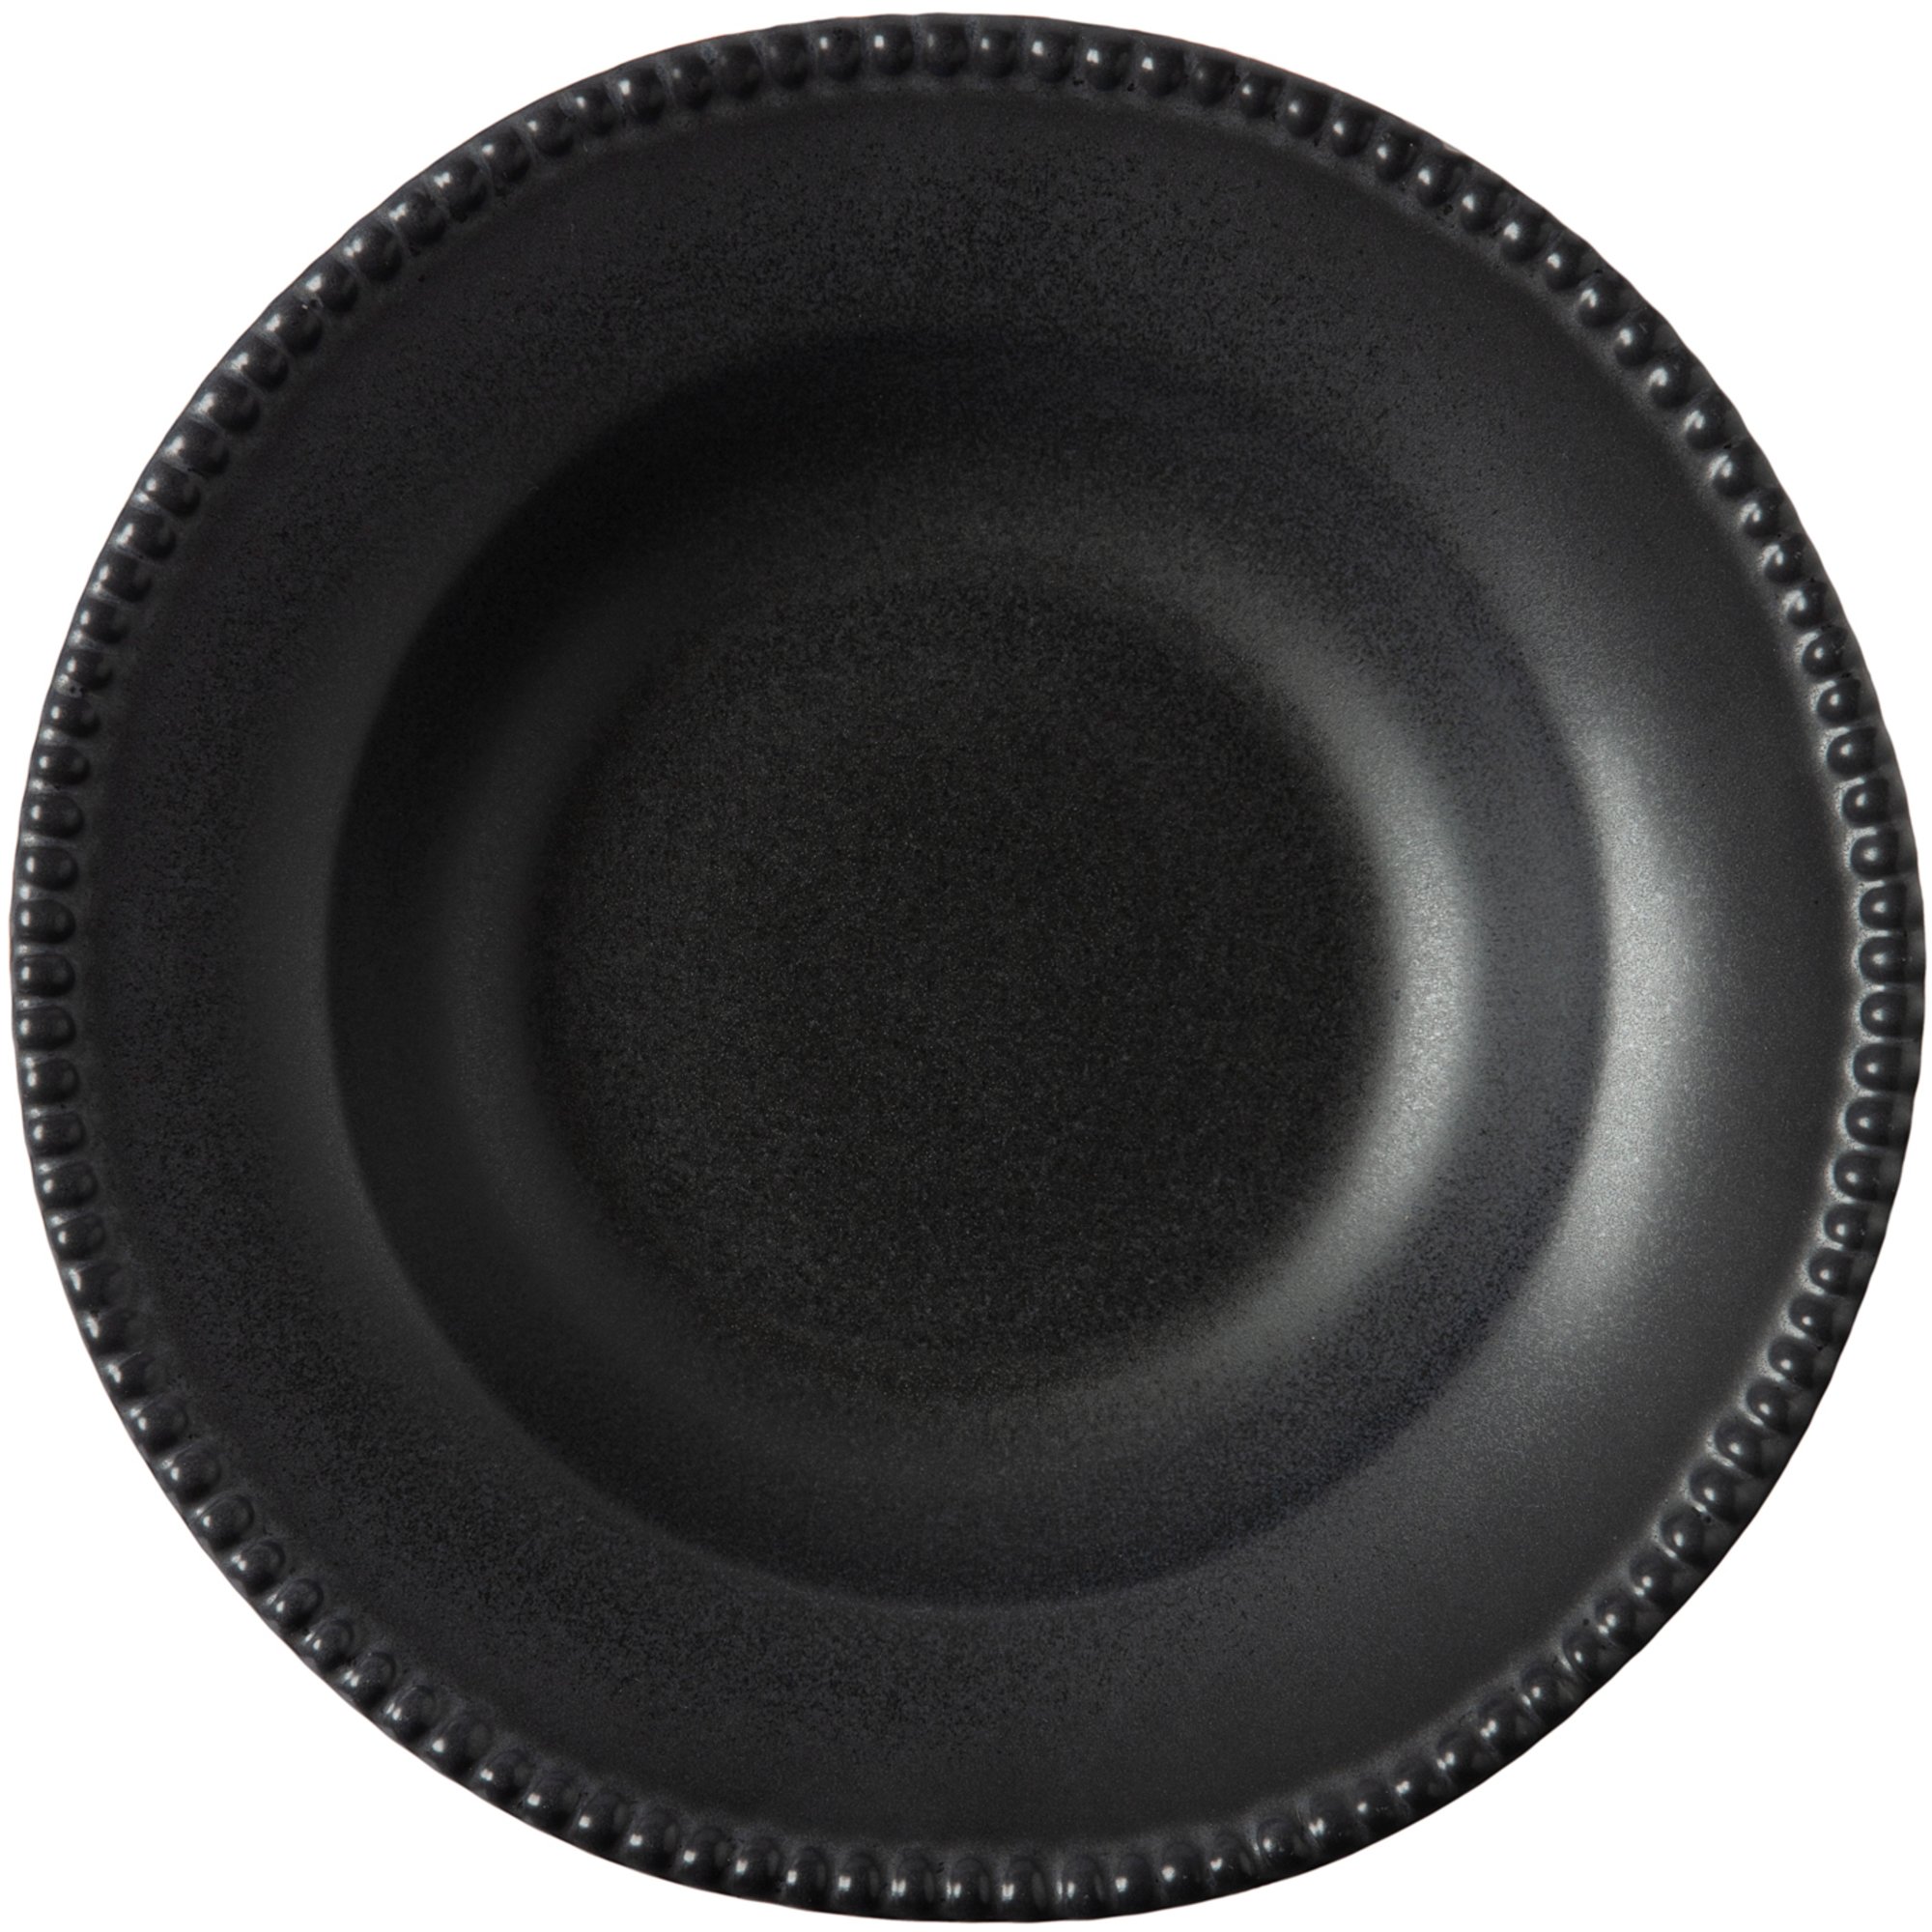 PotteryJo Daria pastatallrik 35 cm svart